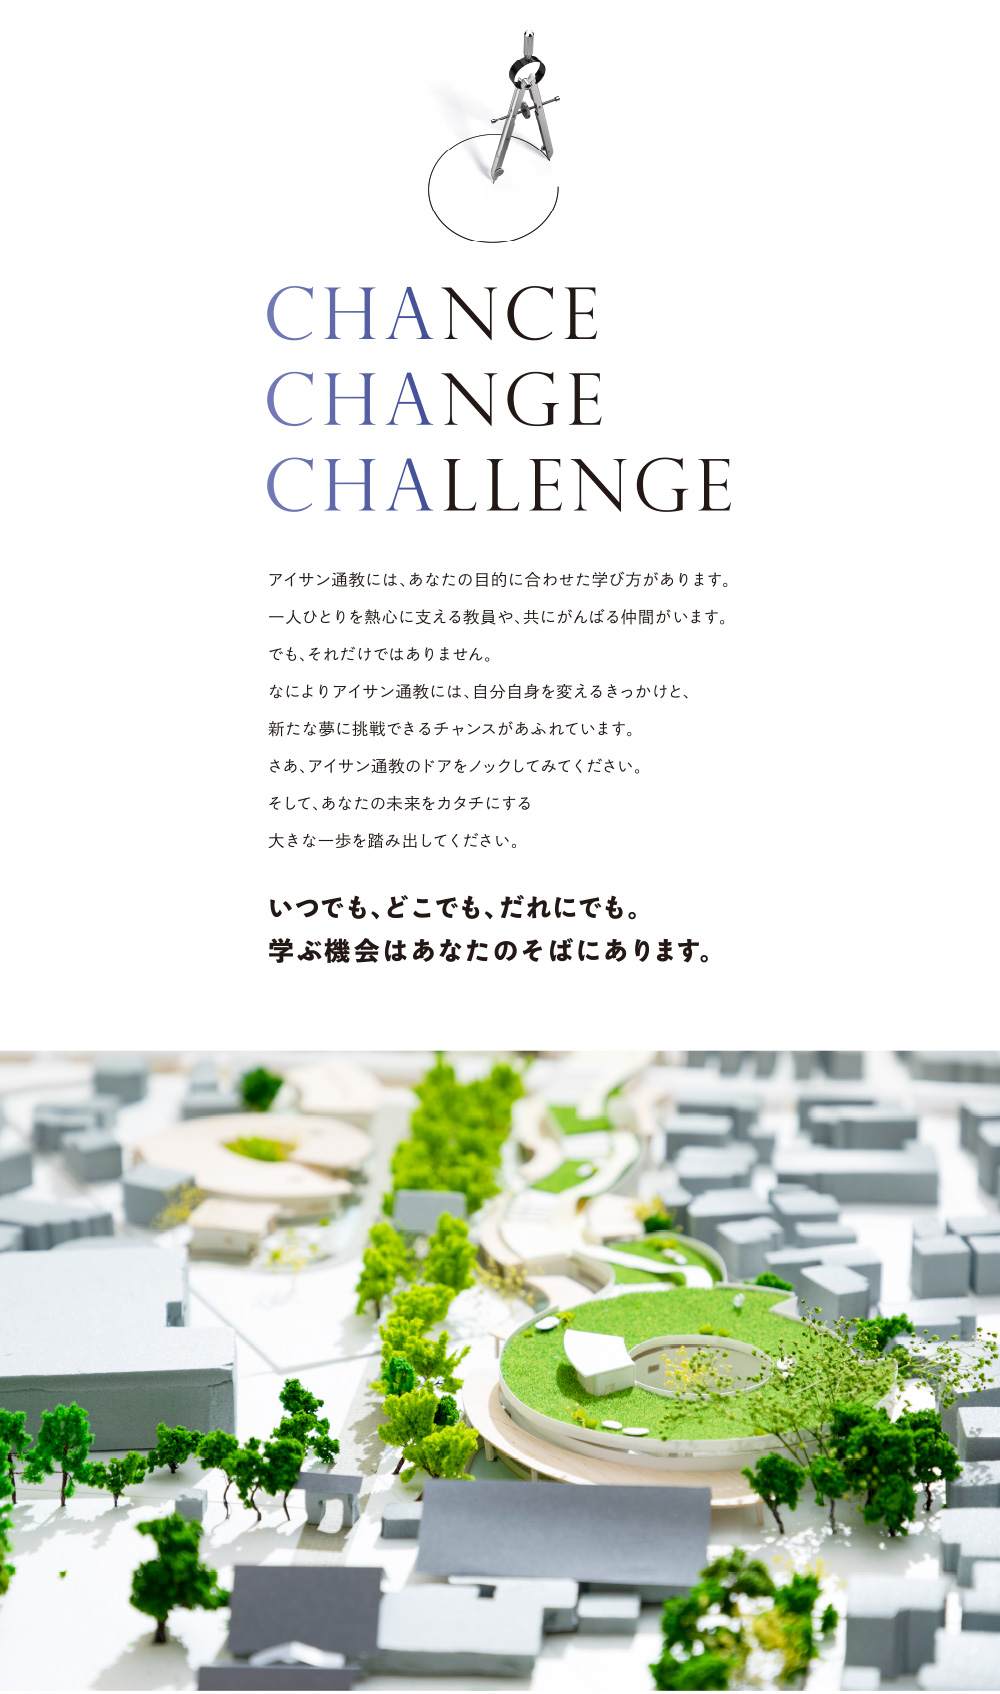 Chance Change Challenge